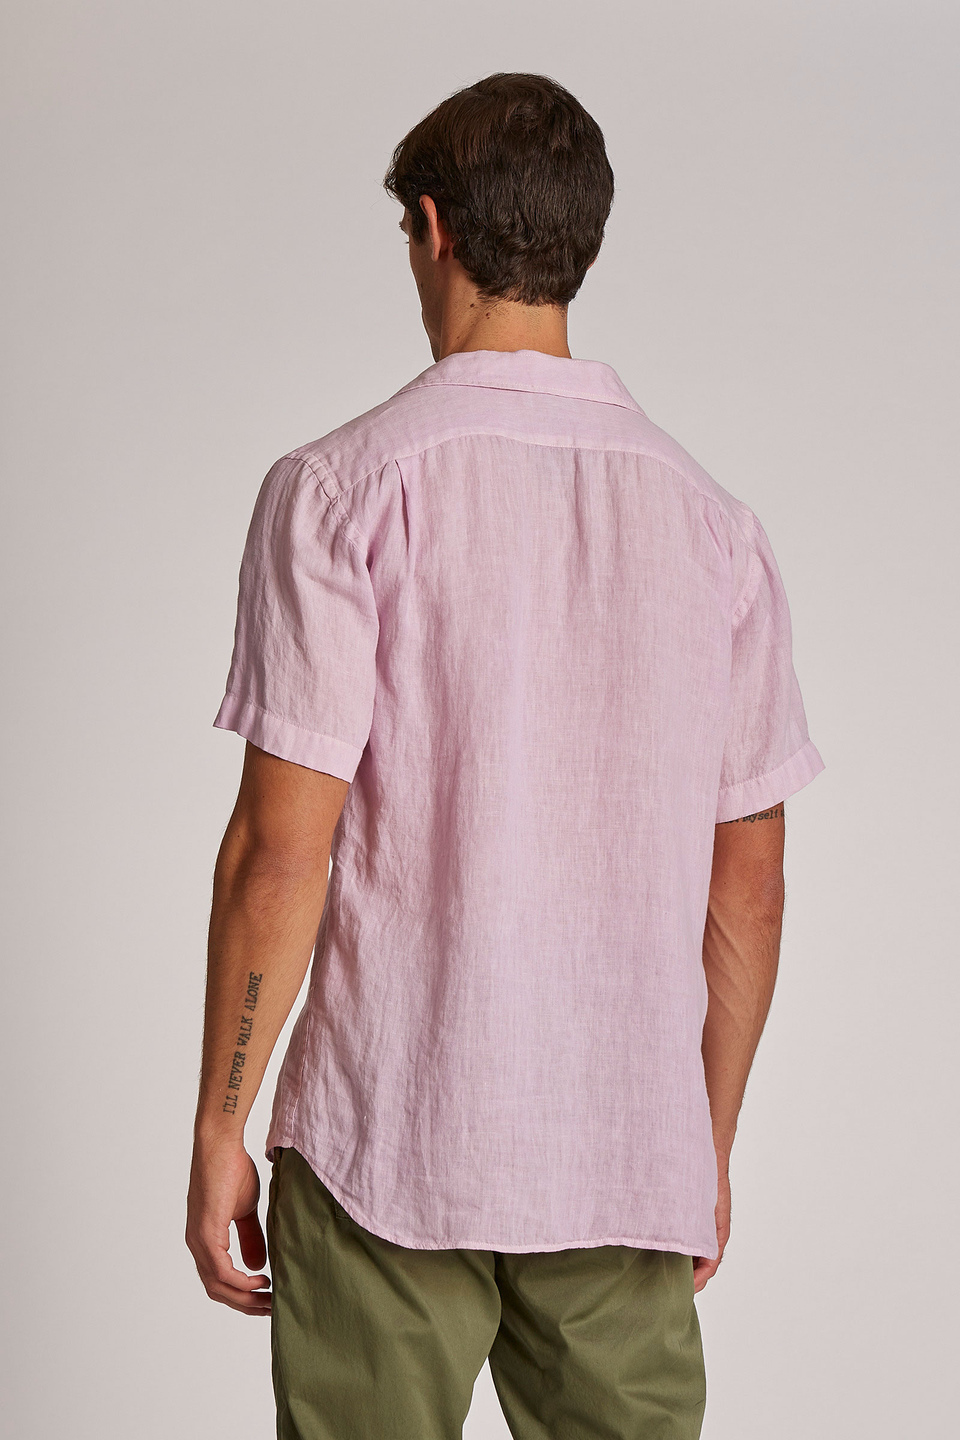 Camisa de hombre de lino, manga corta, corte regular | La Martina - Official Online Shop